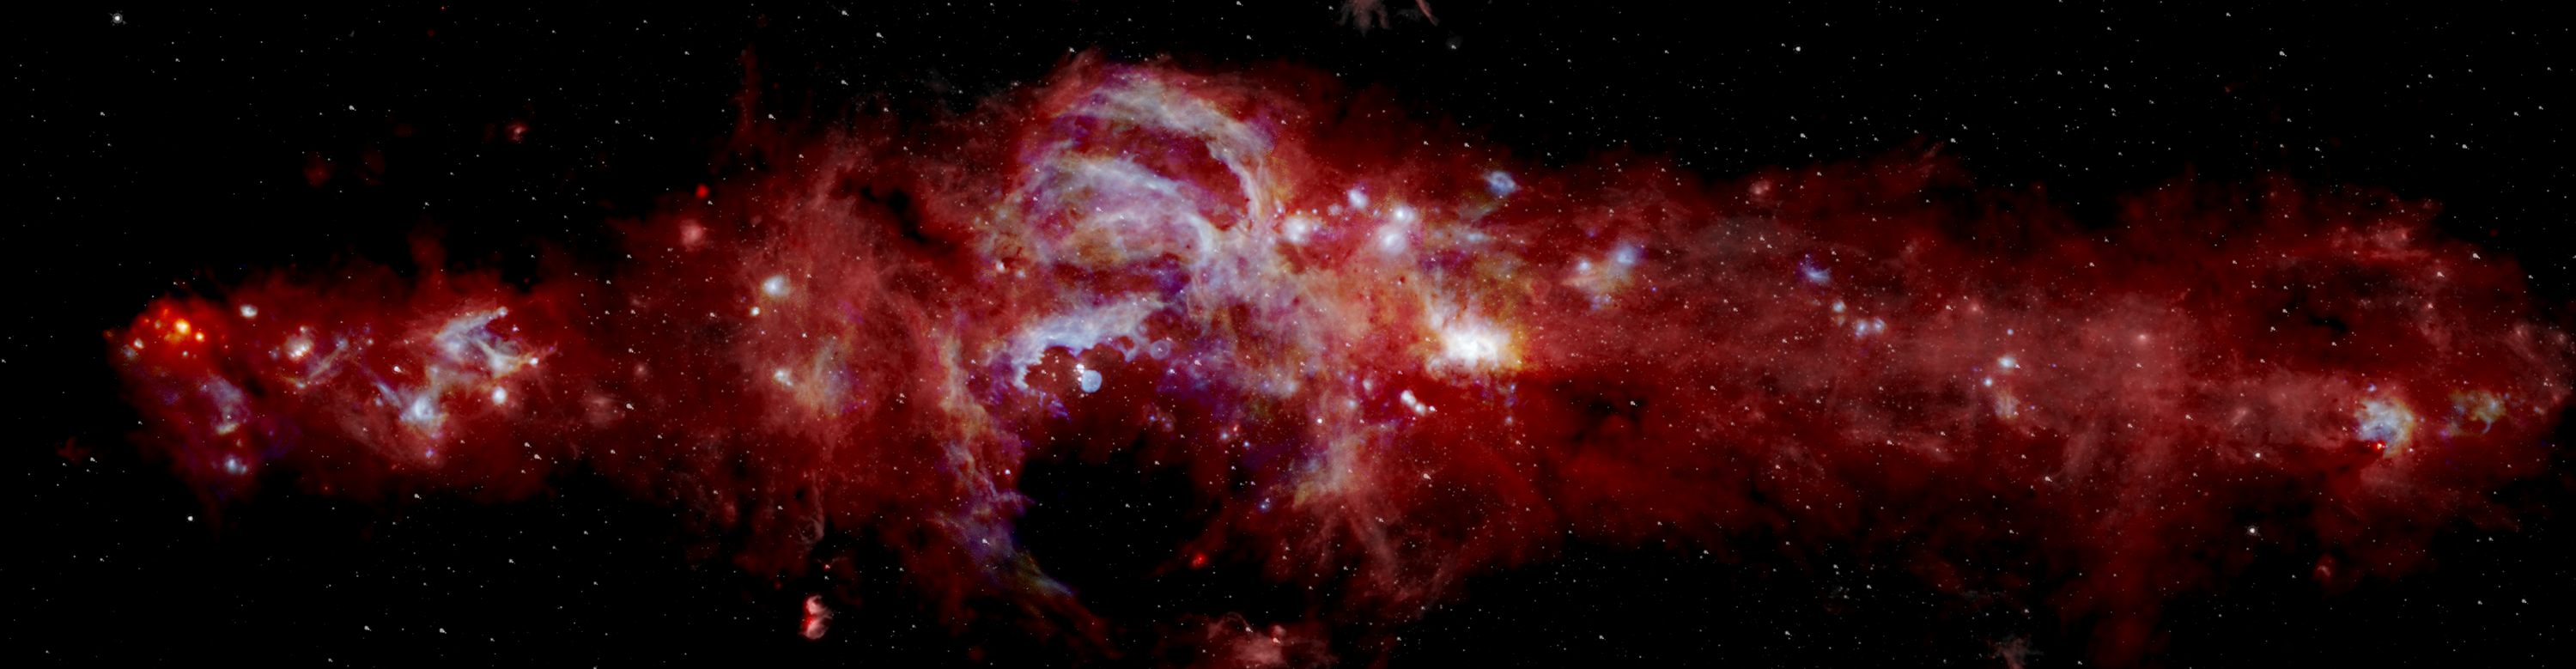 صورة مجرة درب التبانة